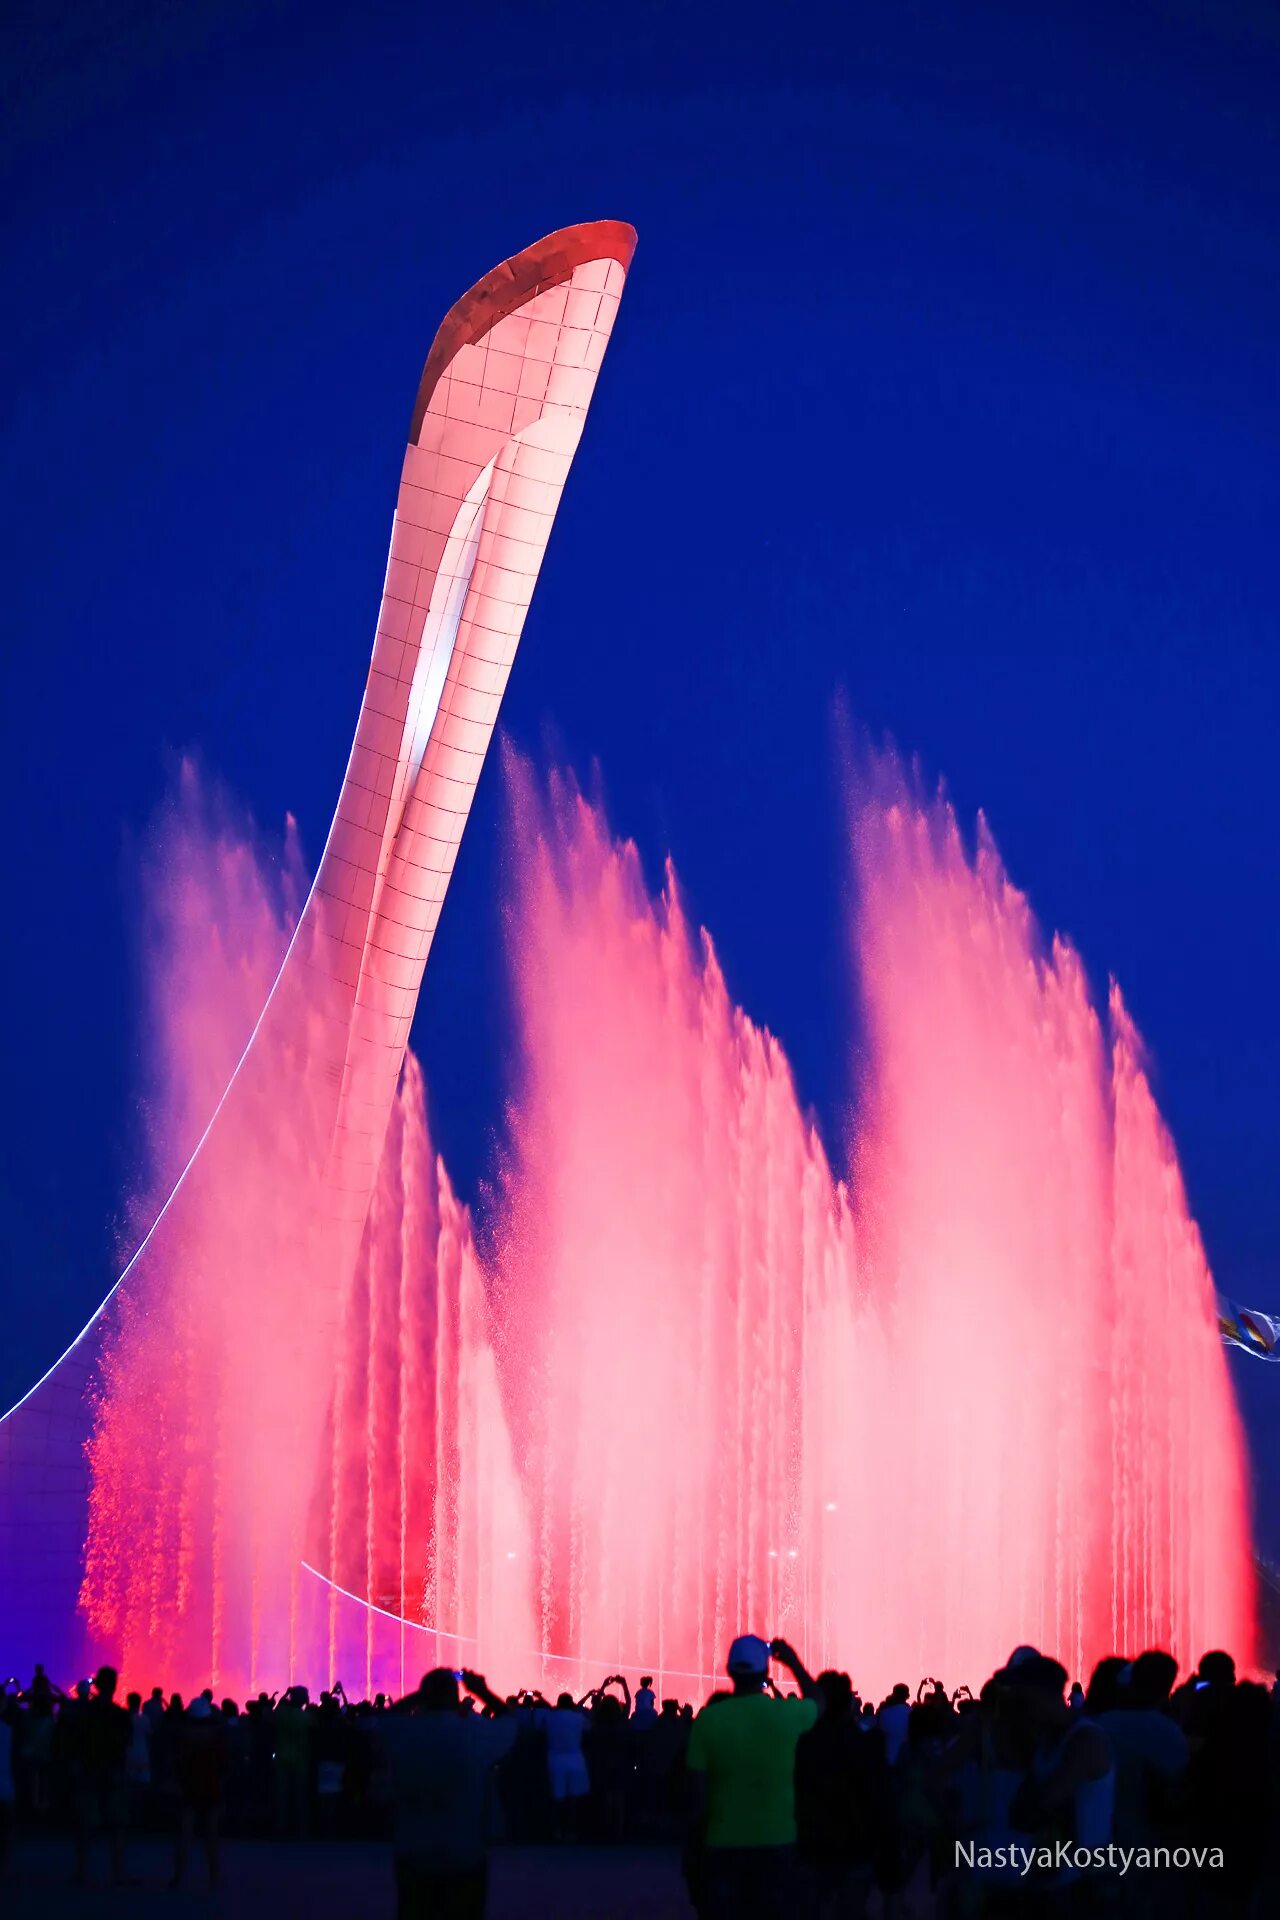 Фонтаны сочи олимпийский парк расписание сегодня. Поющие фонтаны Сочи Олимпийский парк. Музыкальный фонтан в Адлере Олимпийский парк. Сочи парк фонтан. Шоу поющих фонтанов в Олимпийском парке Сочи.